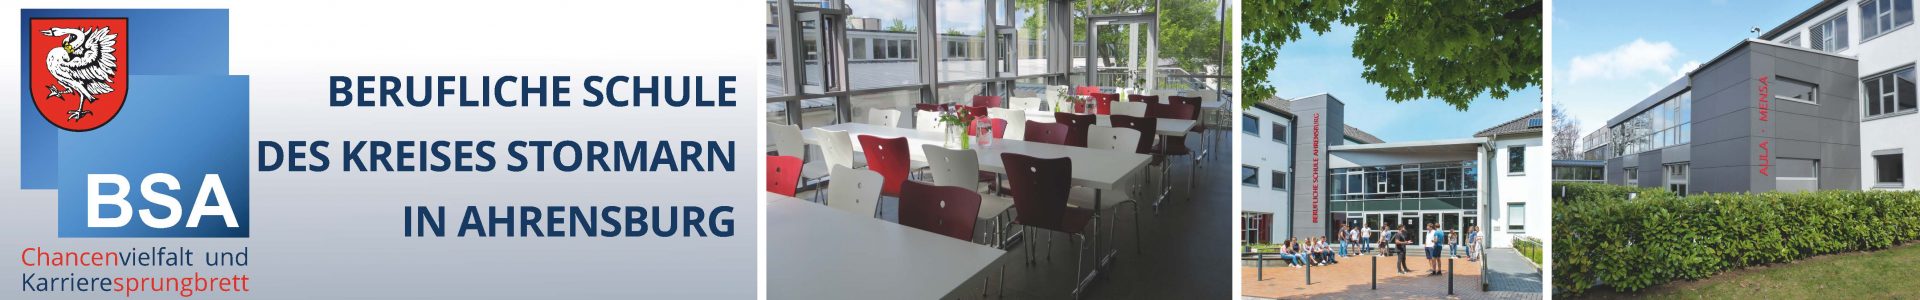 Ahrensburger Berufsschule nach Sommerferien schneller aus Südkreis erreichbar